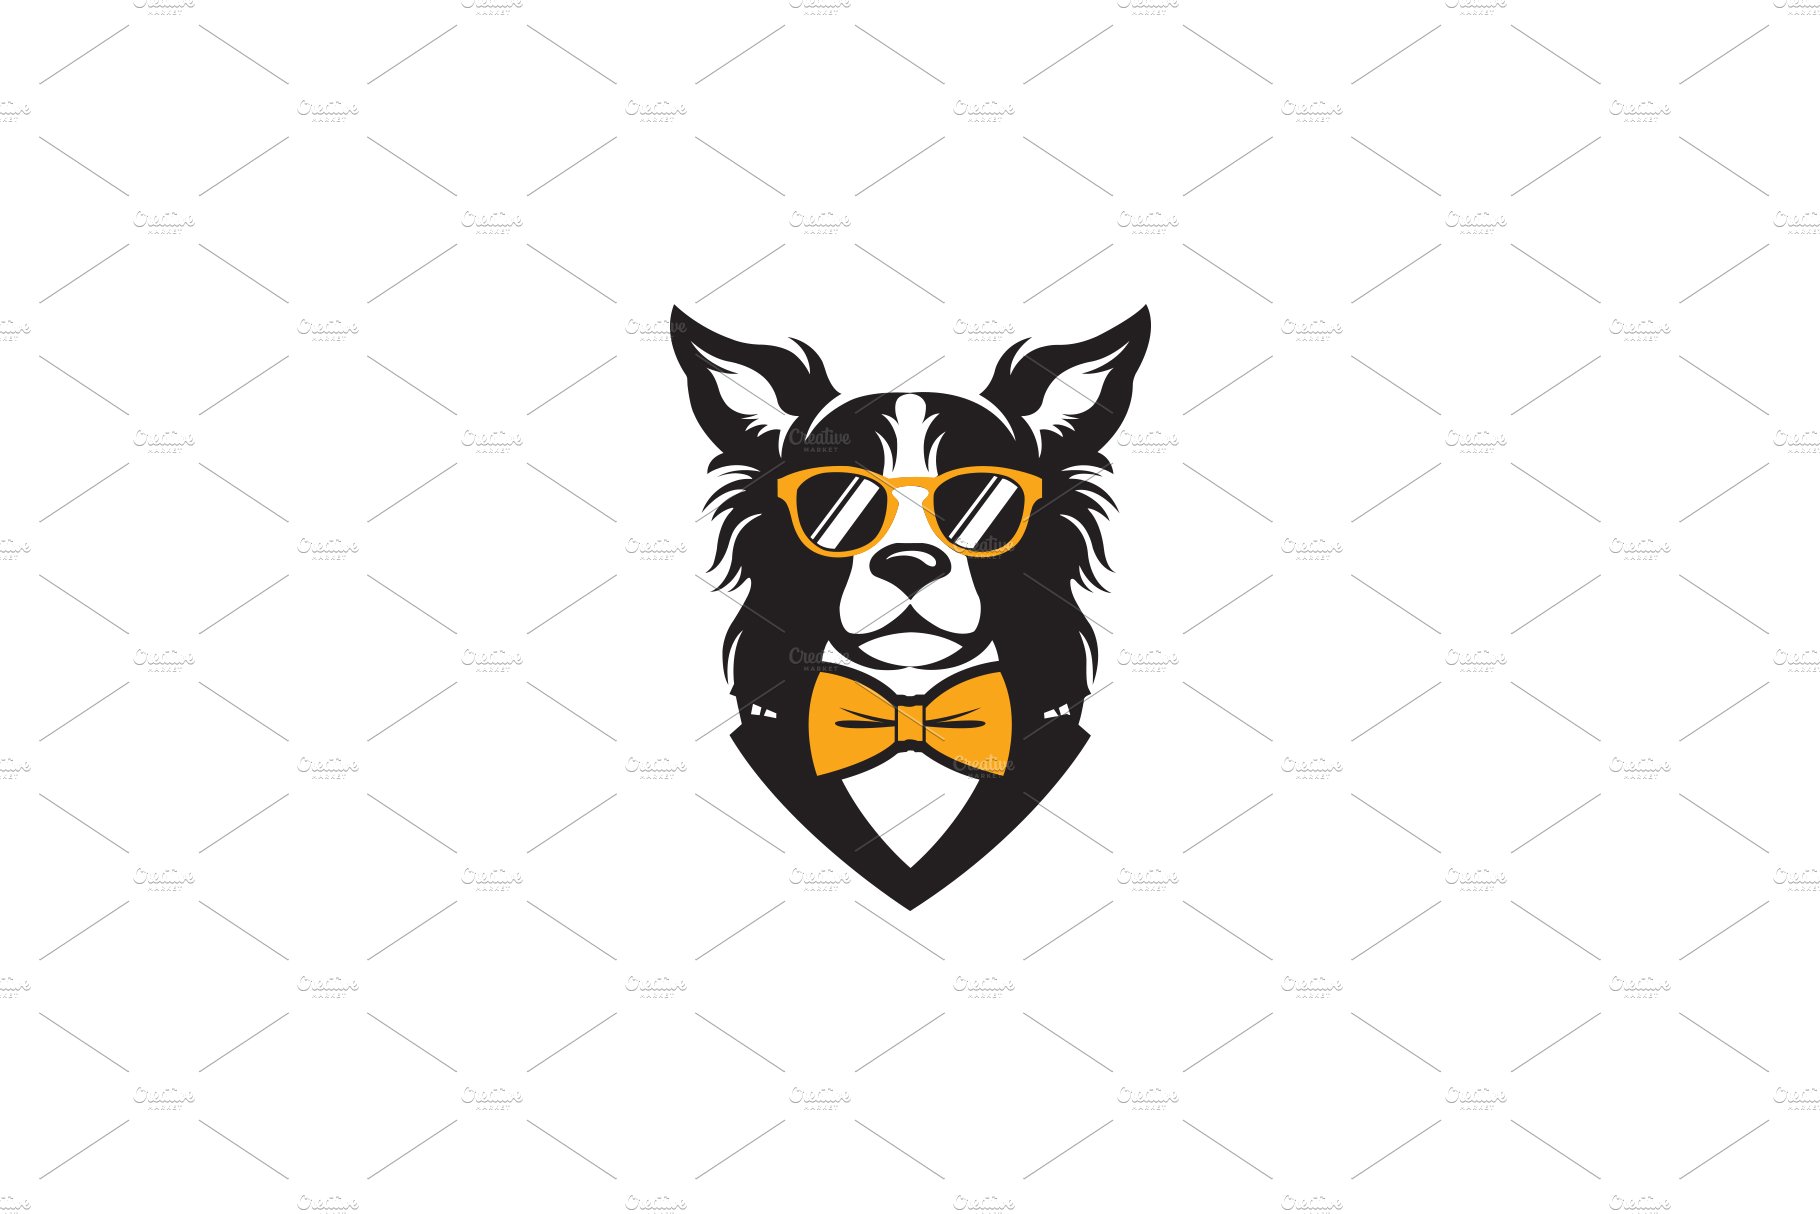 Dog Logo cover image.